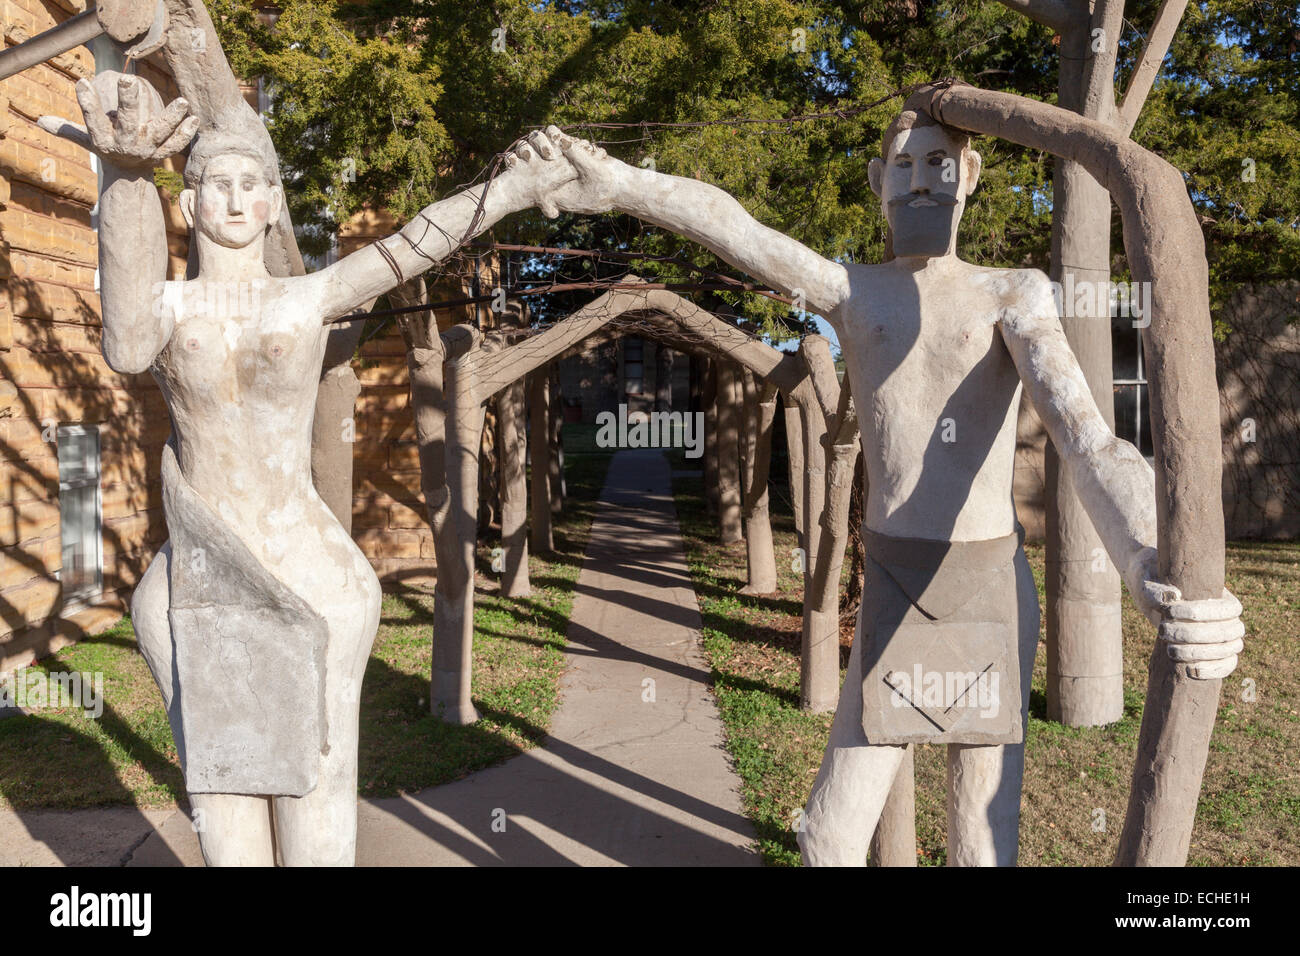 Dettaglio, S. P. Dinsmoor populista del veggente outsider arte scultura 'giardino di Eden" in Lucas, Kansas, STATI UNITI D'AMERICA Foto Stock